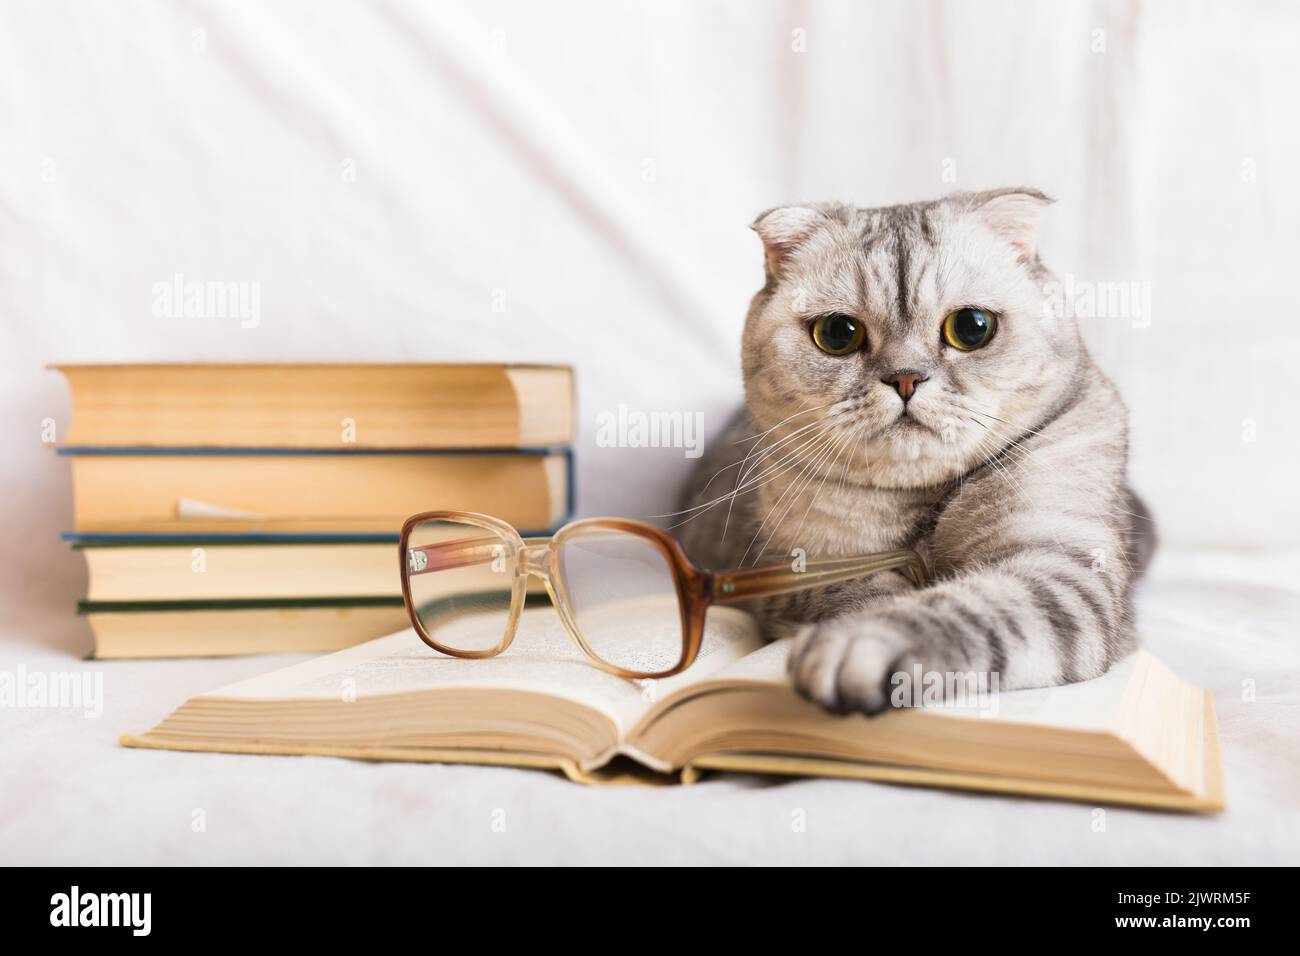 Curioso gatto folto scozzese che riposa vicino a una pila di libri Foto Stock